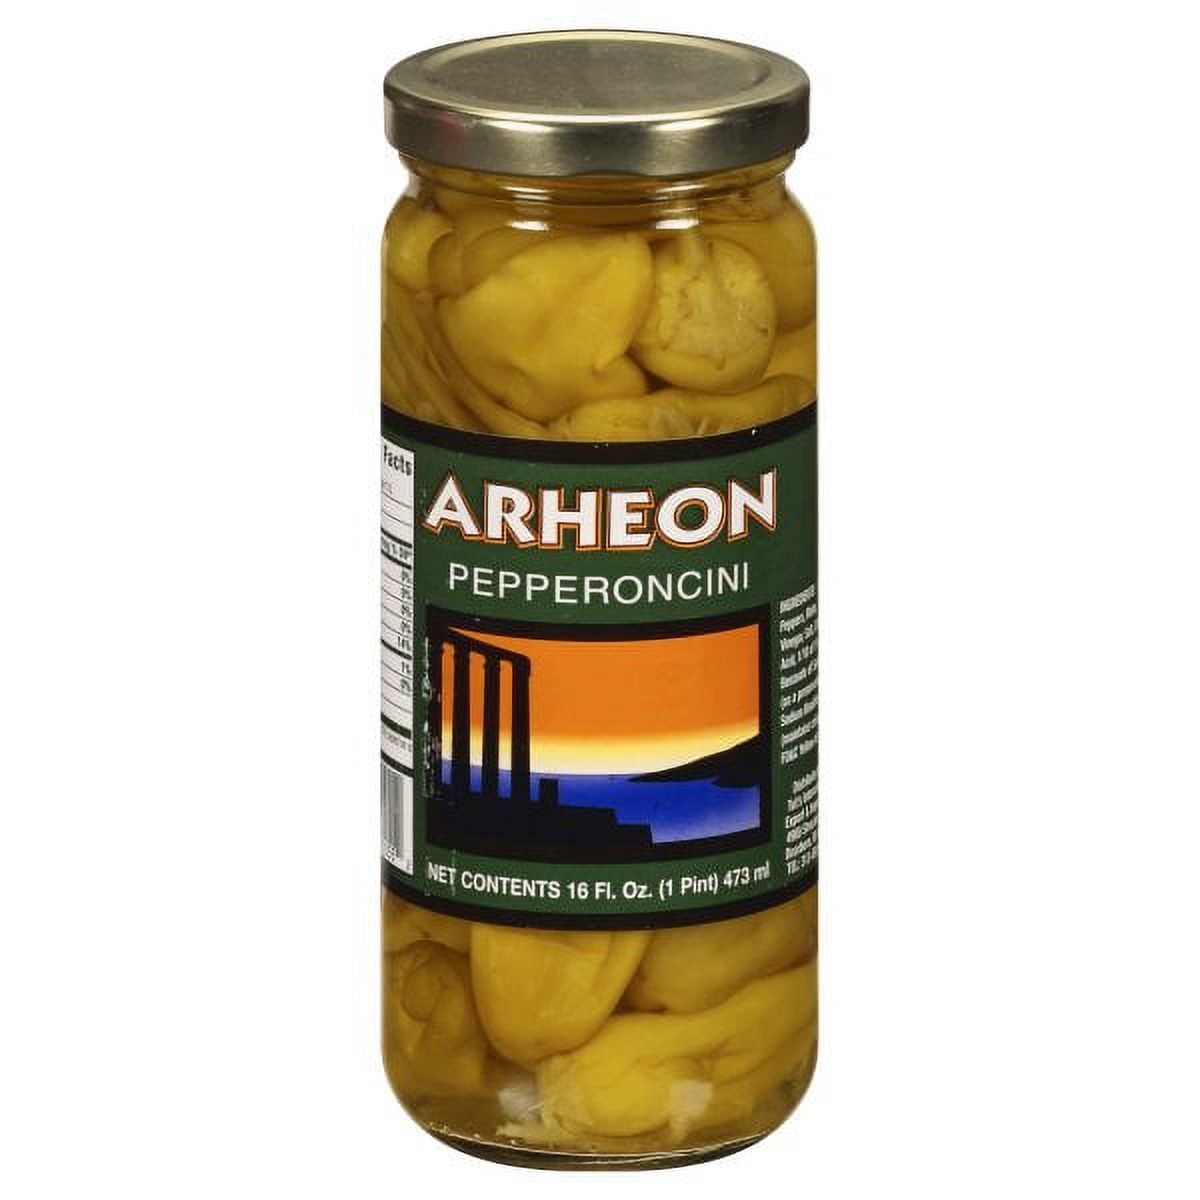 Arheon Pepperoncini Peppers, 16 Oz - image 1 of 4